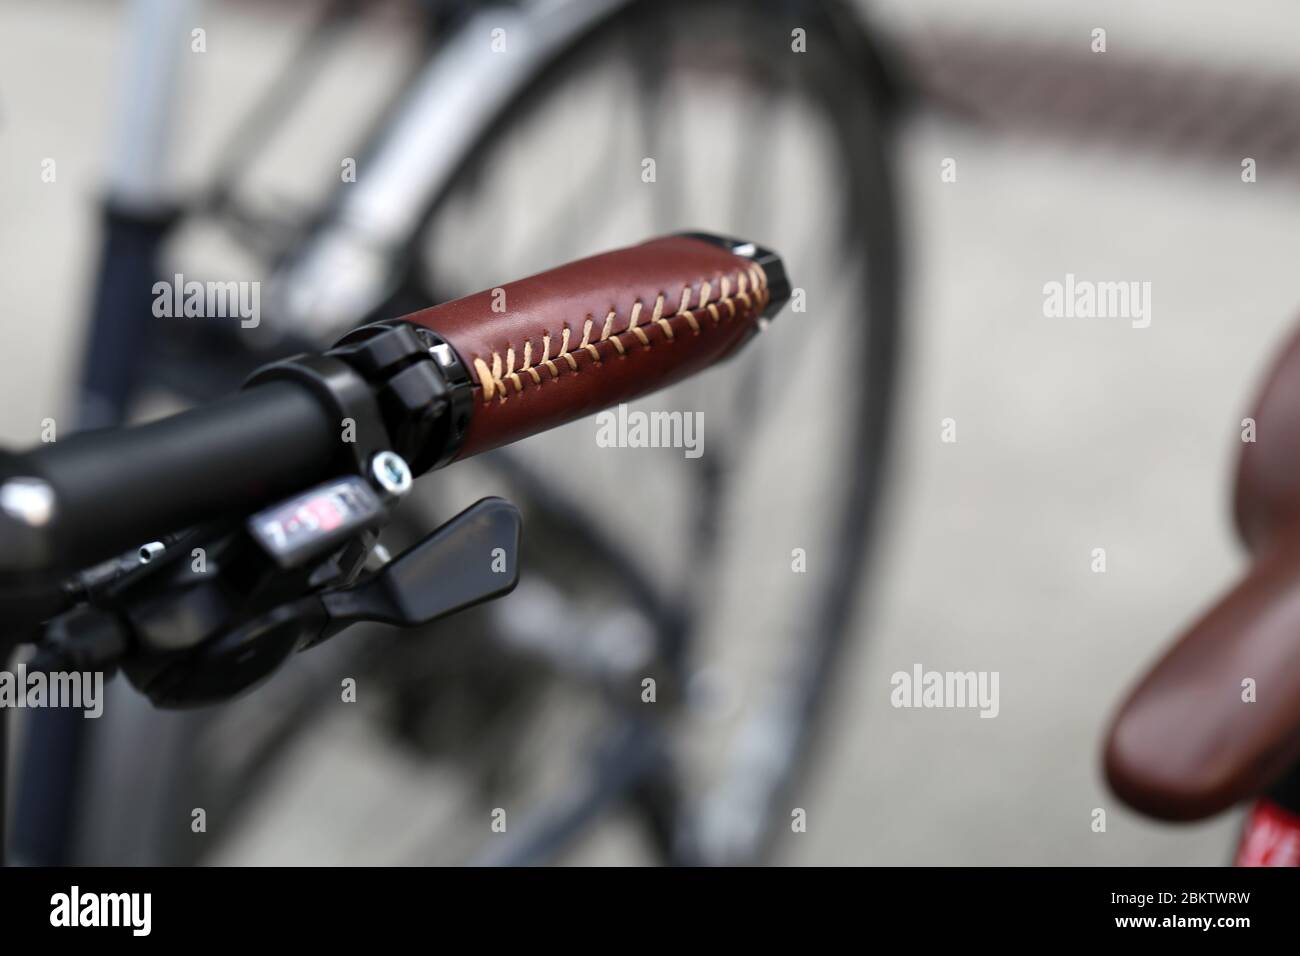 Immagine a colori di primo piano del manubrio della bicicletta con dettagli in pelle marrone e campanello nero, Baden, Svizzera, marzo 2020. Le biciclette sono un ottimo esercizio fisico. Foto Stock